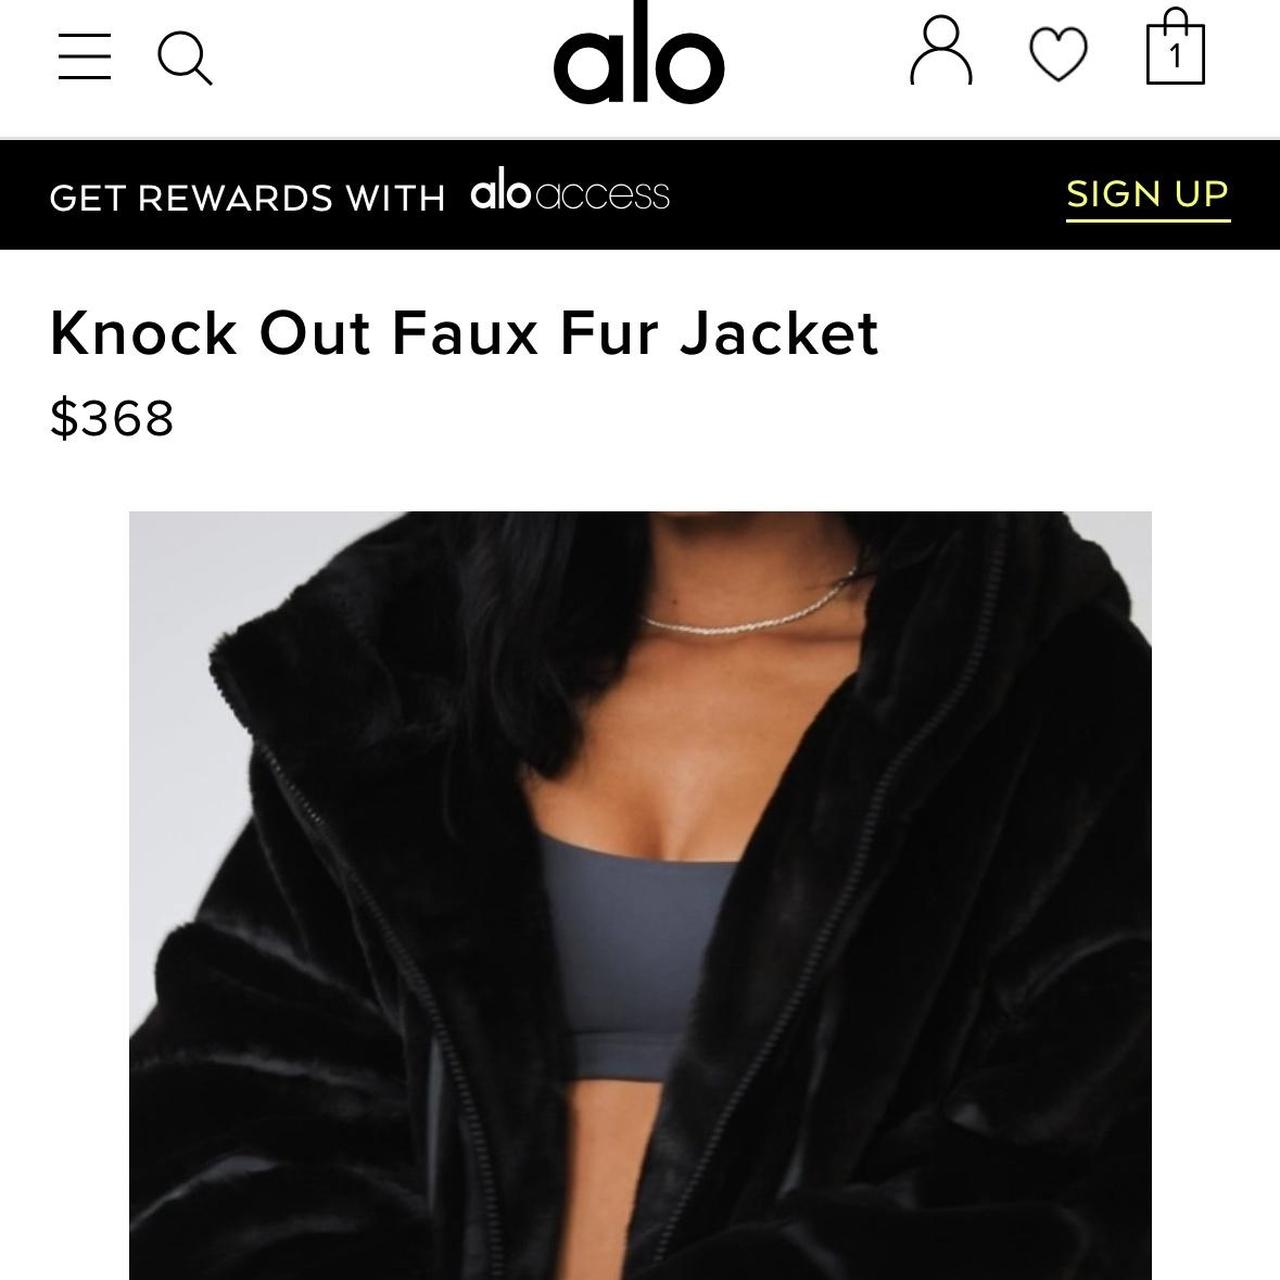 Knock Out Faux Fur Jacket - Black